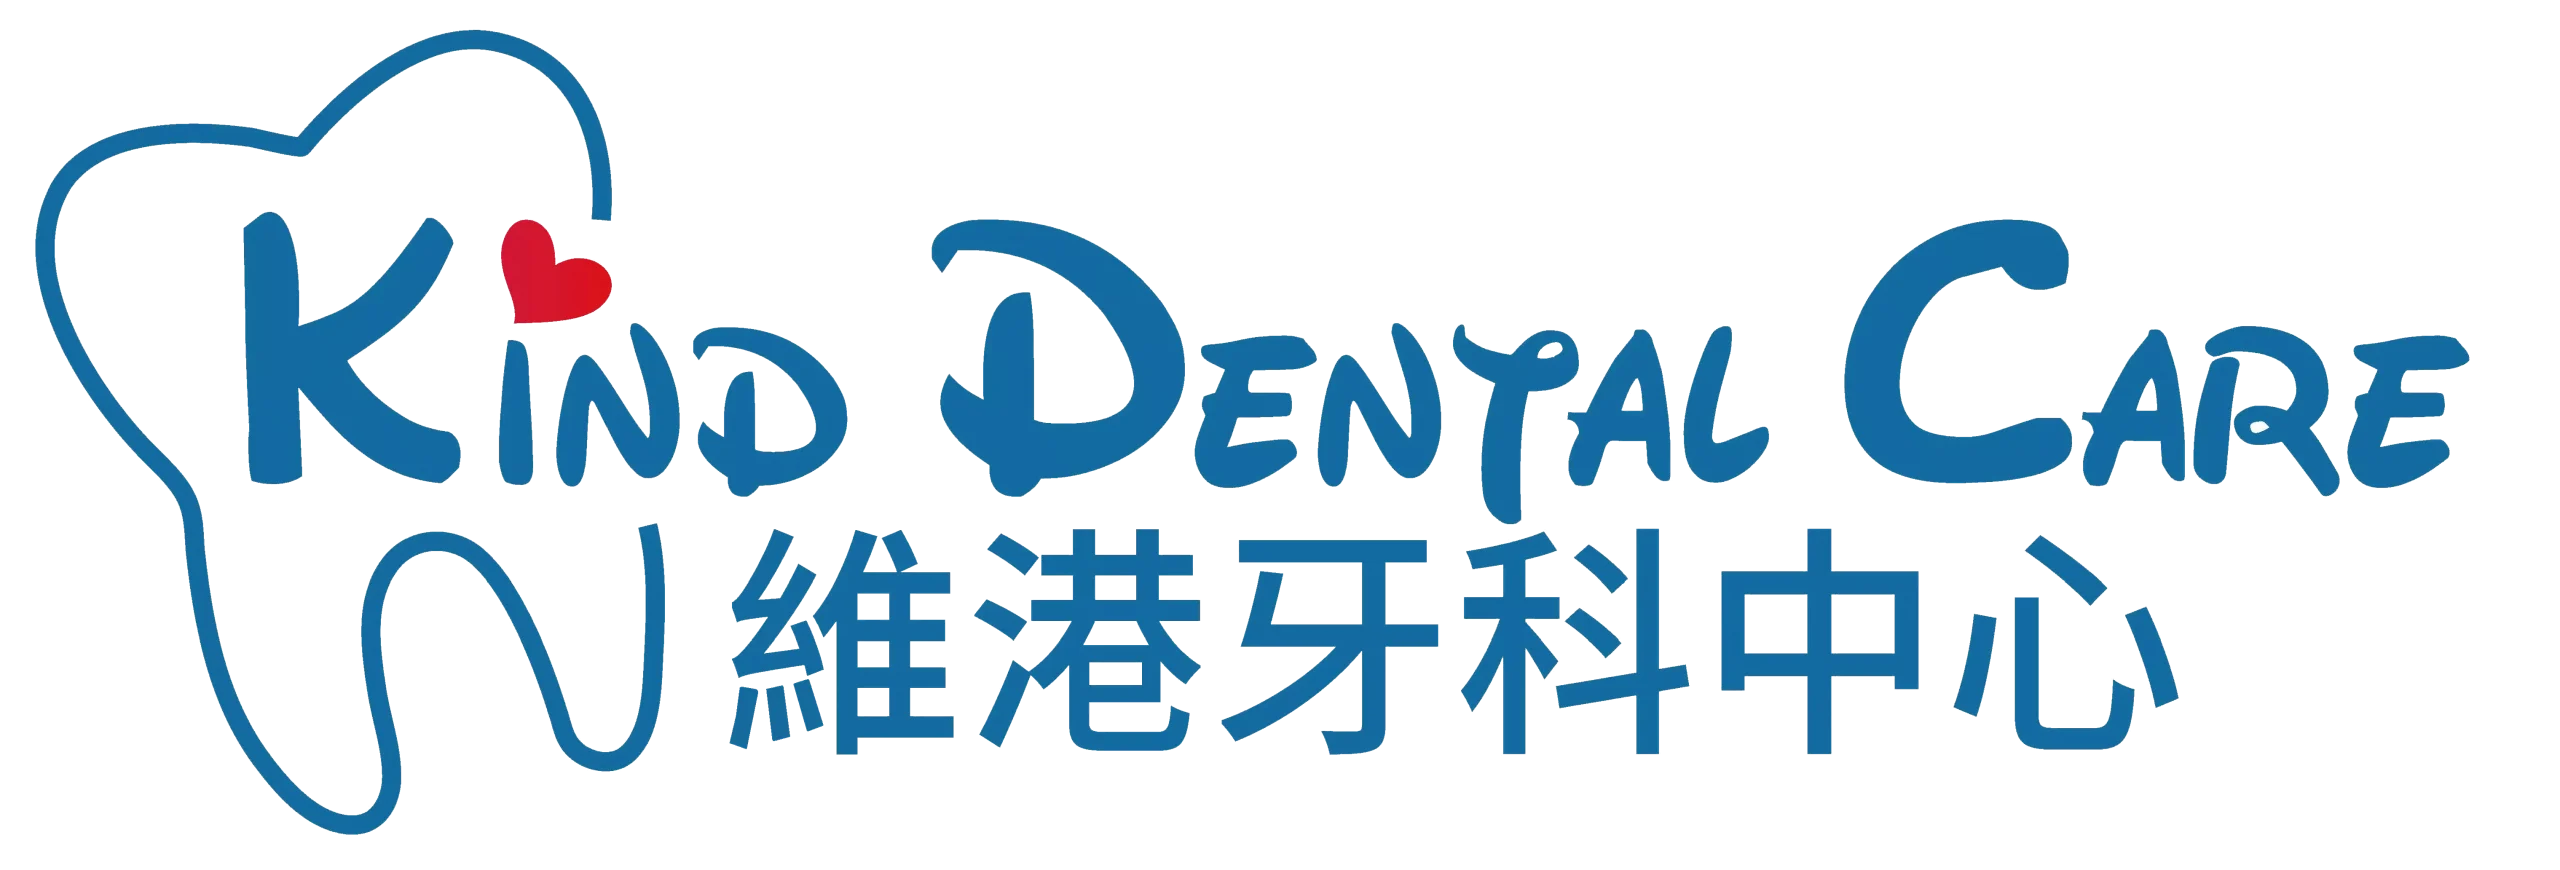 kind dental logo